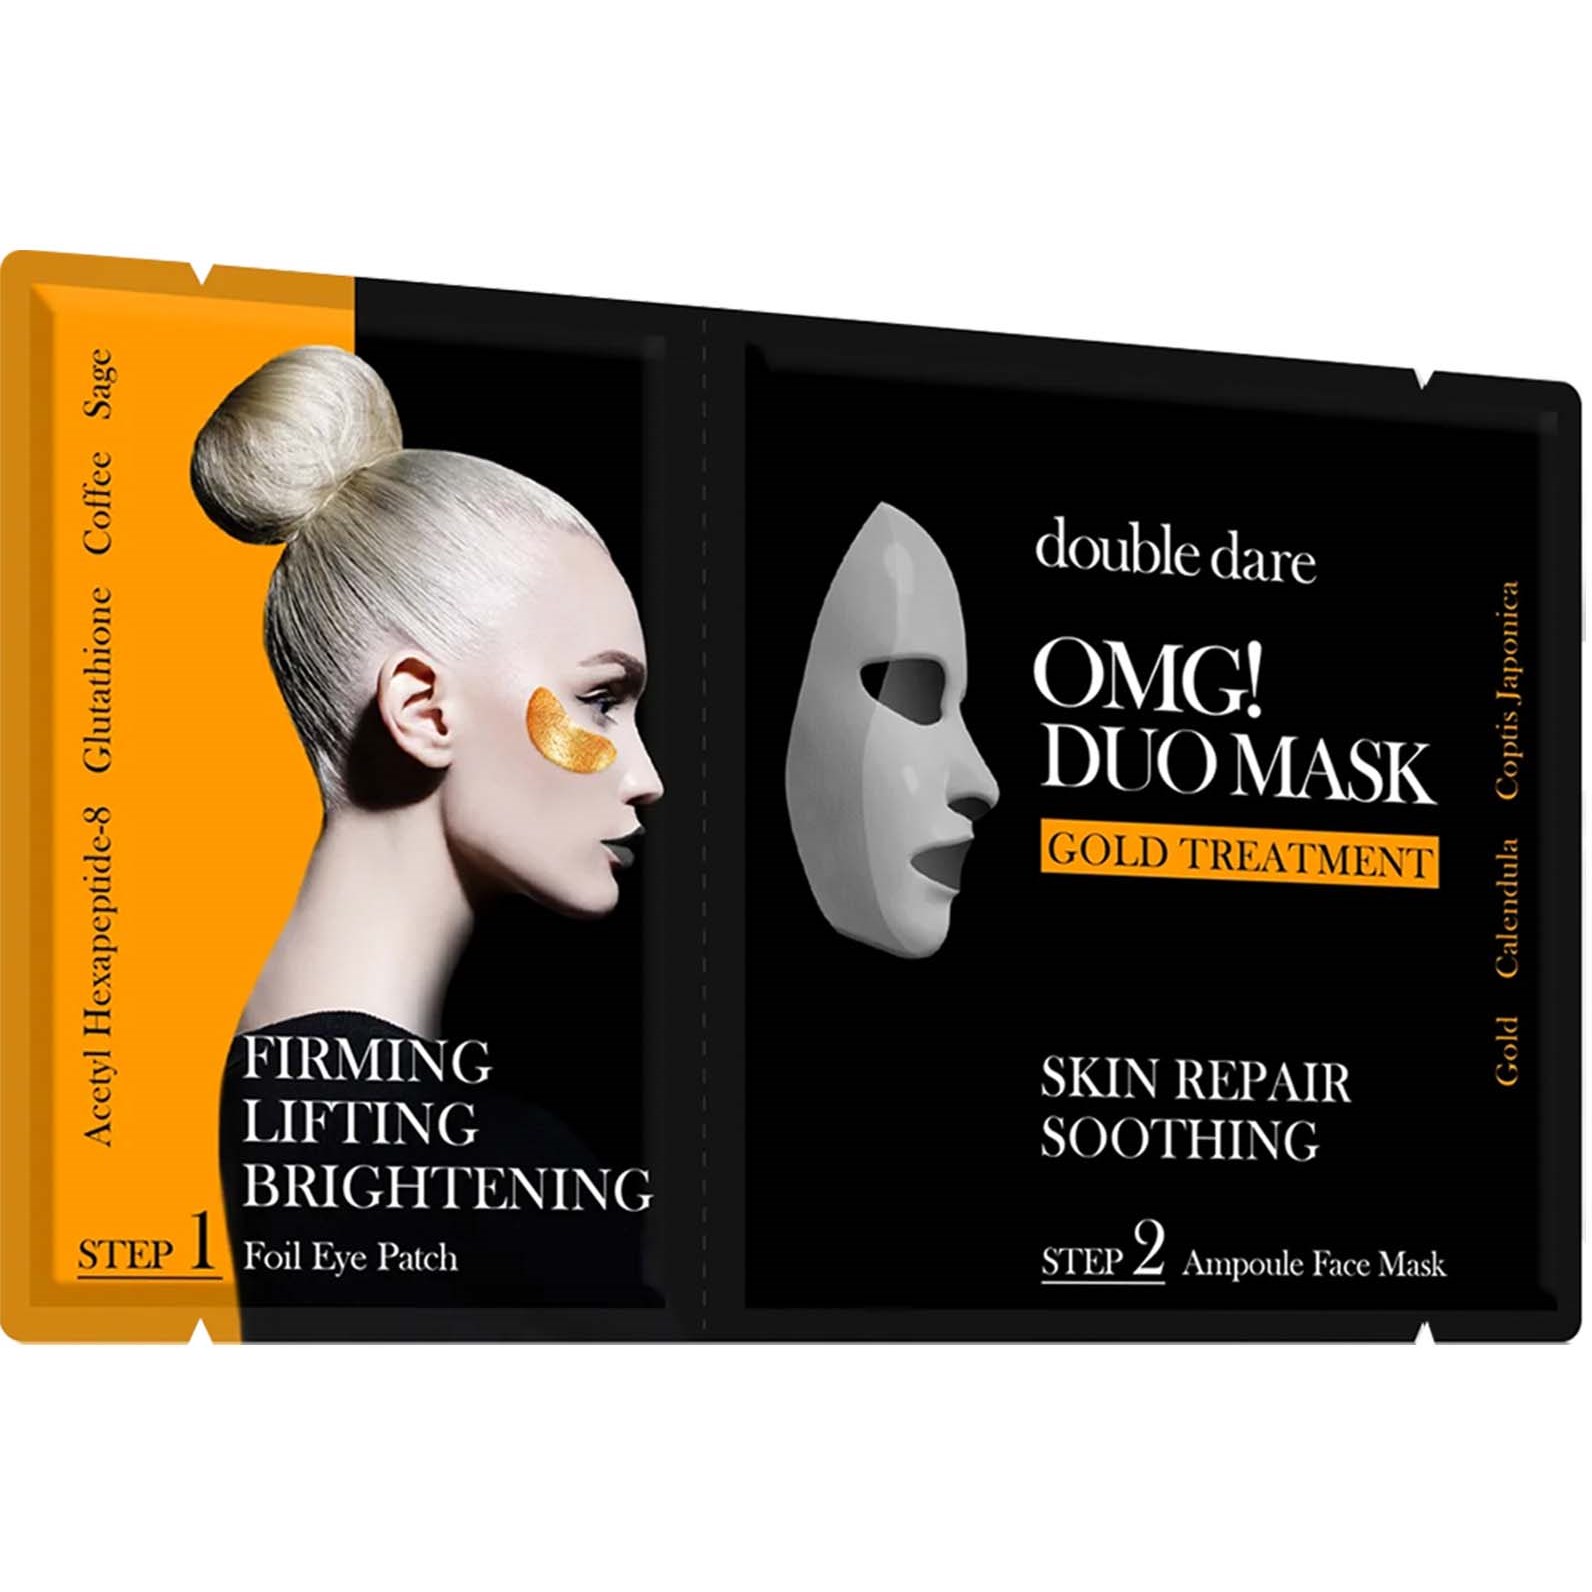 Bilde av Omg! Double Dare Duo Mask Gold Treatment